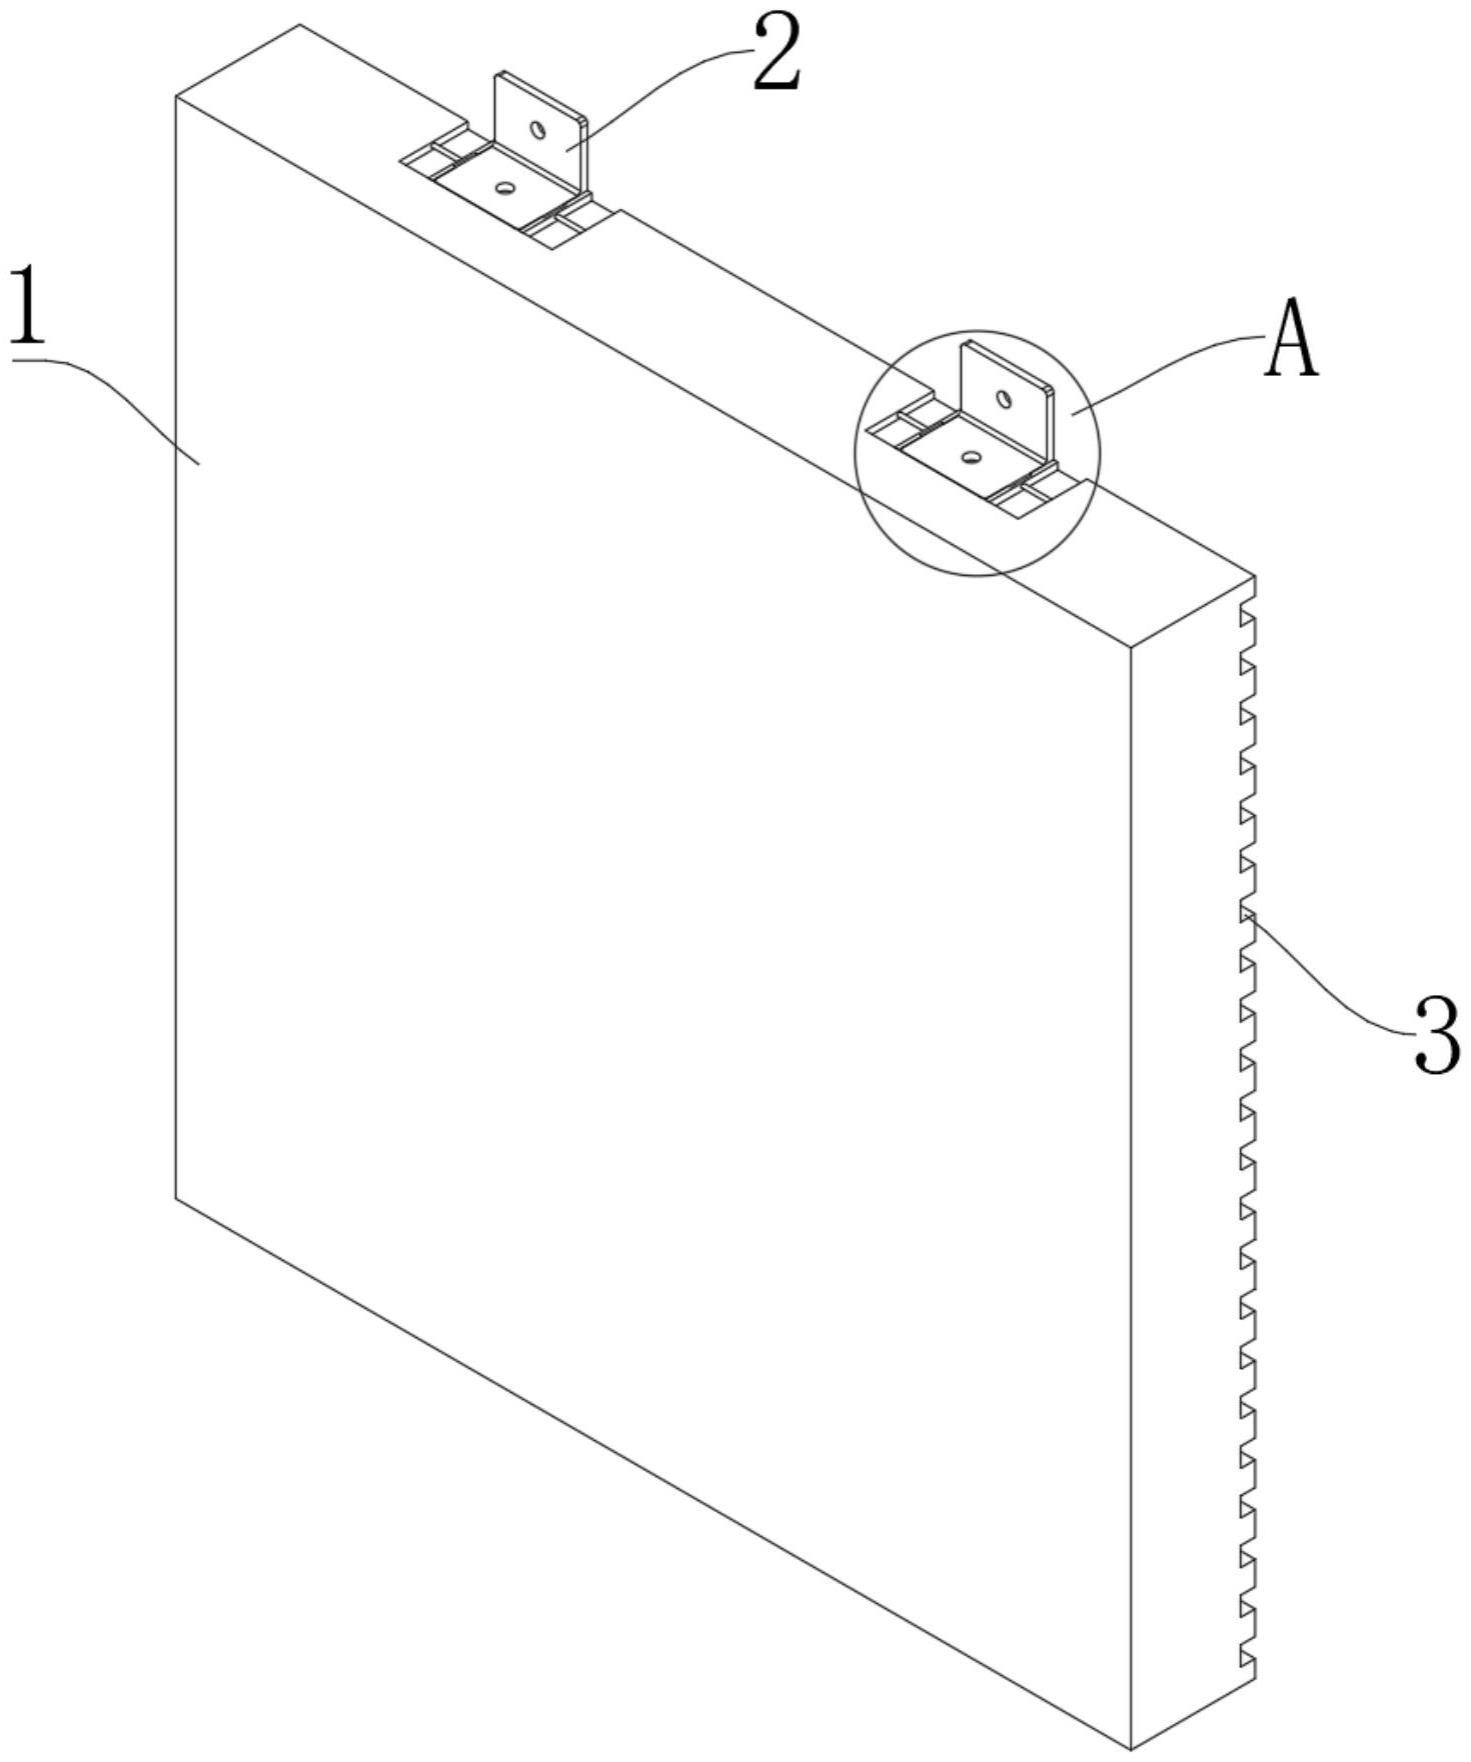 石墨聚苯乙烯芯材结构保温板的制作方法